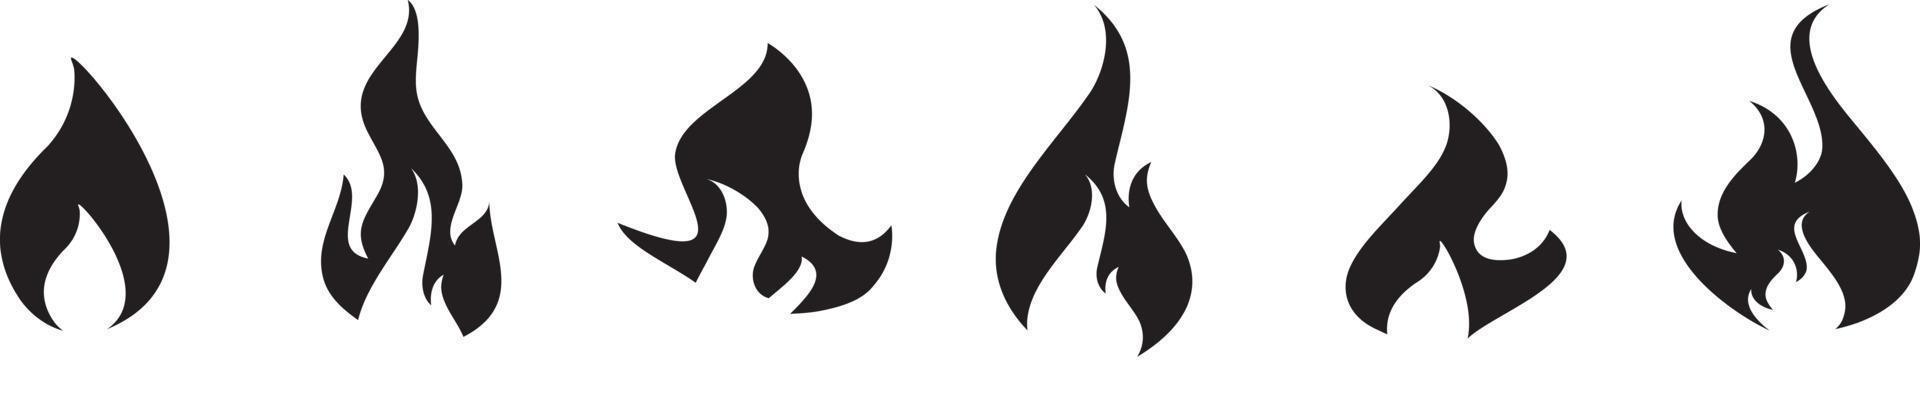 colección de iconos de fuego. símbolo de llama de fuego. logotipo de silueta de hoguera. símbolos de llamas establecen estilo plano - vector de stock.